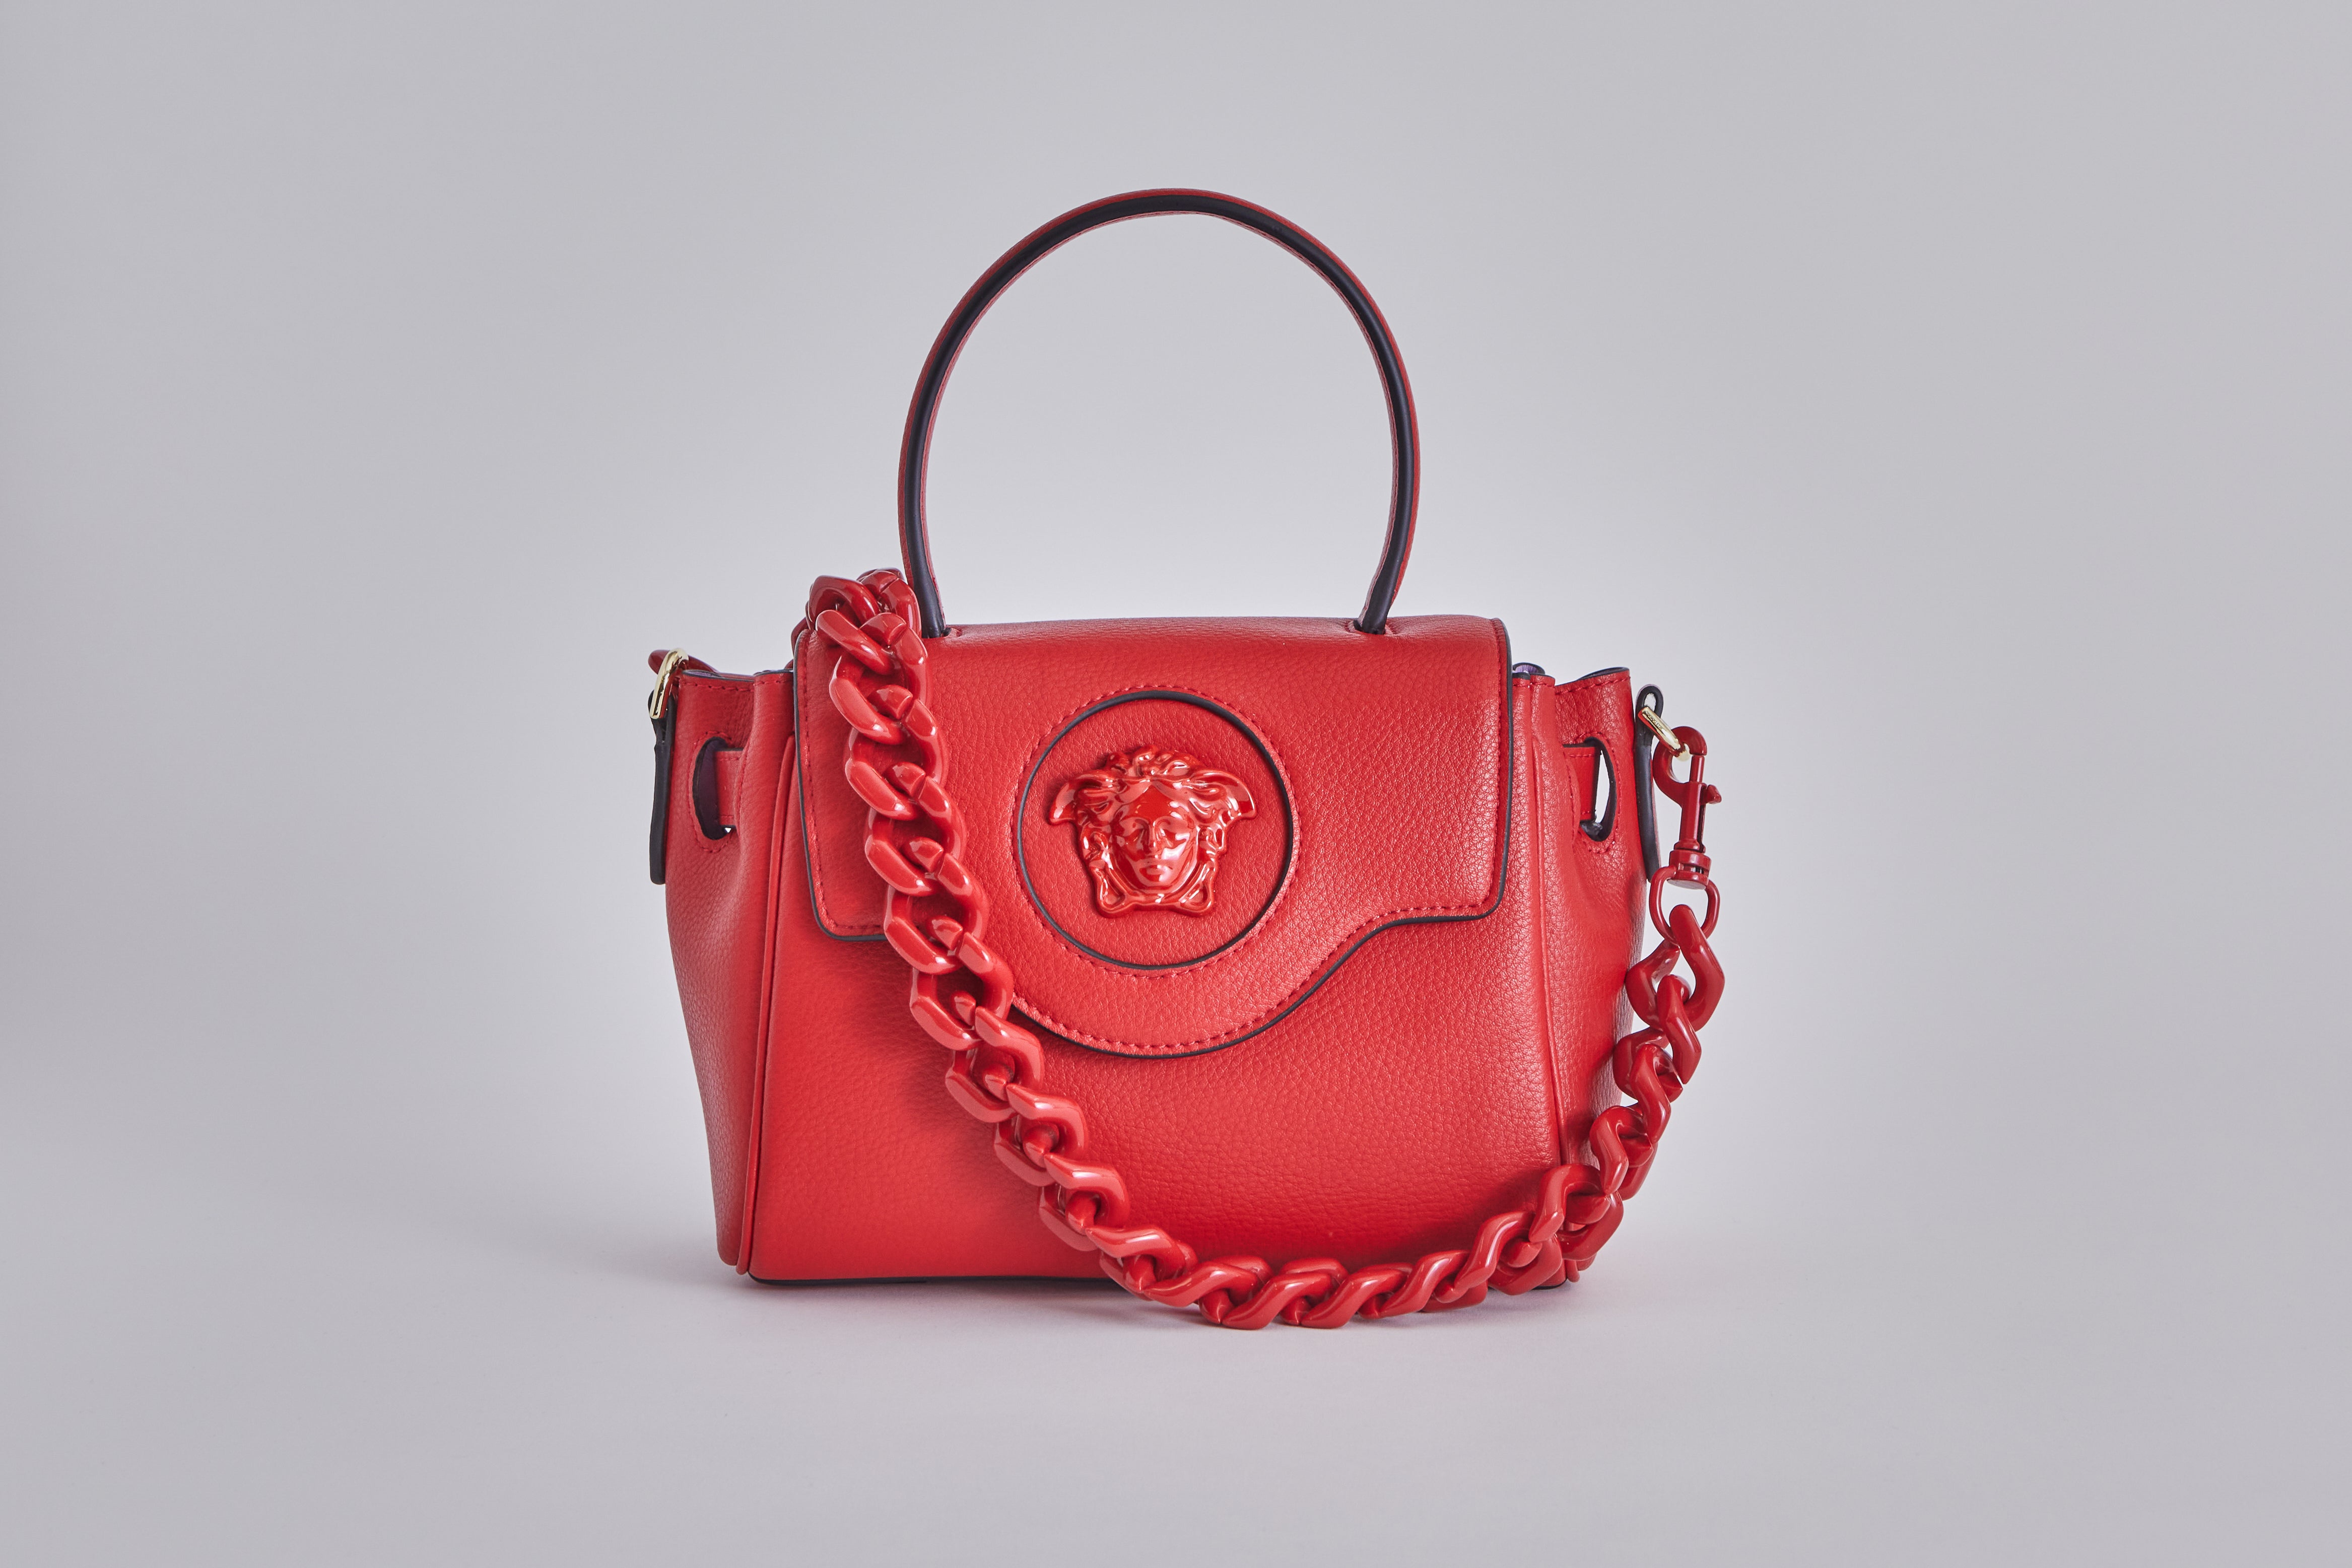 Genuine Versace 1969 Abbigliamento Red Milano Italy Tote Bag $360 | eBay